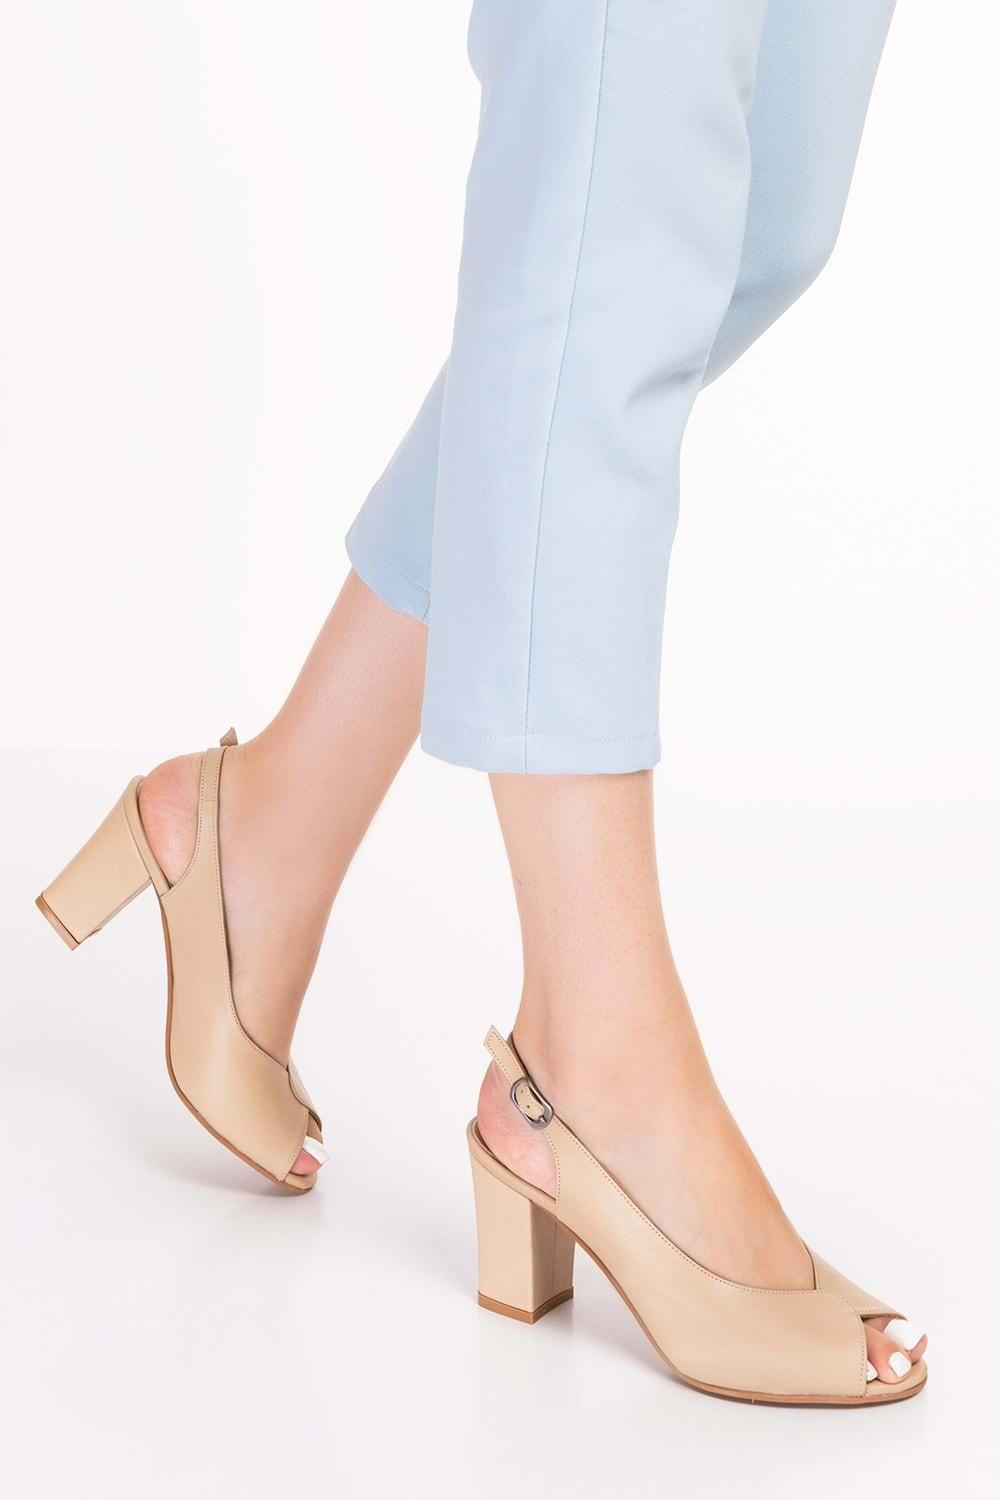 Gondol Kadın Hakiki Deri Klasik Topuklu Ayakkabı şhn.0091 - Bej - 36